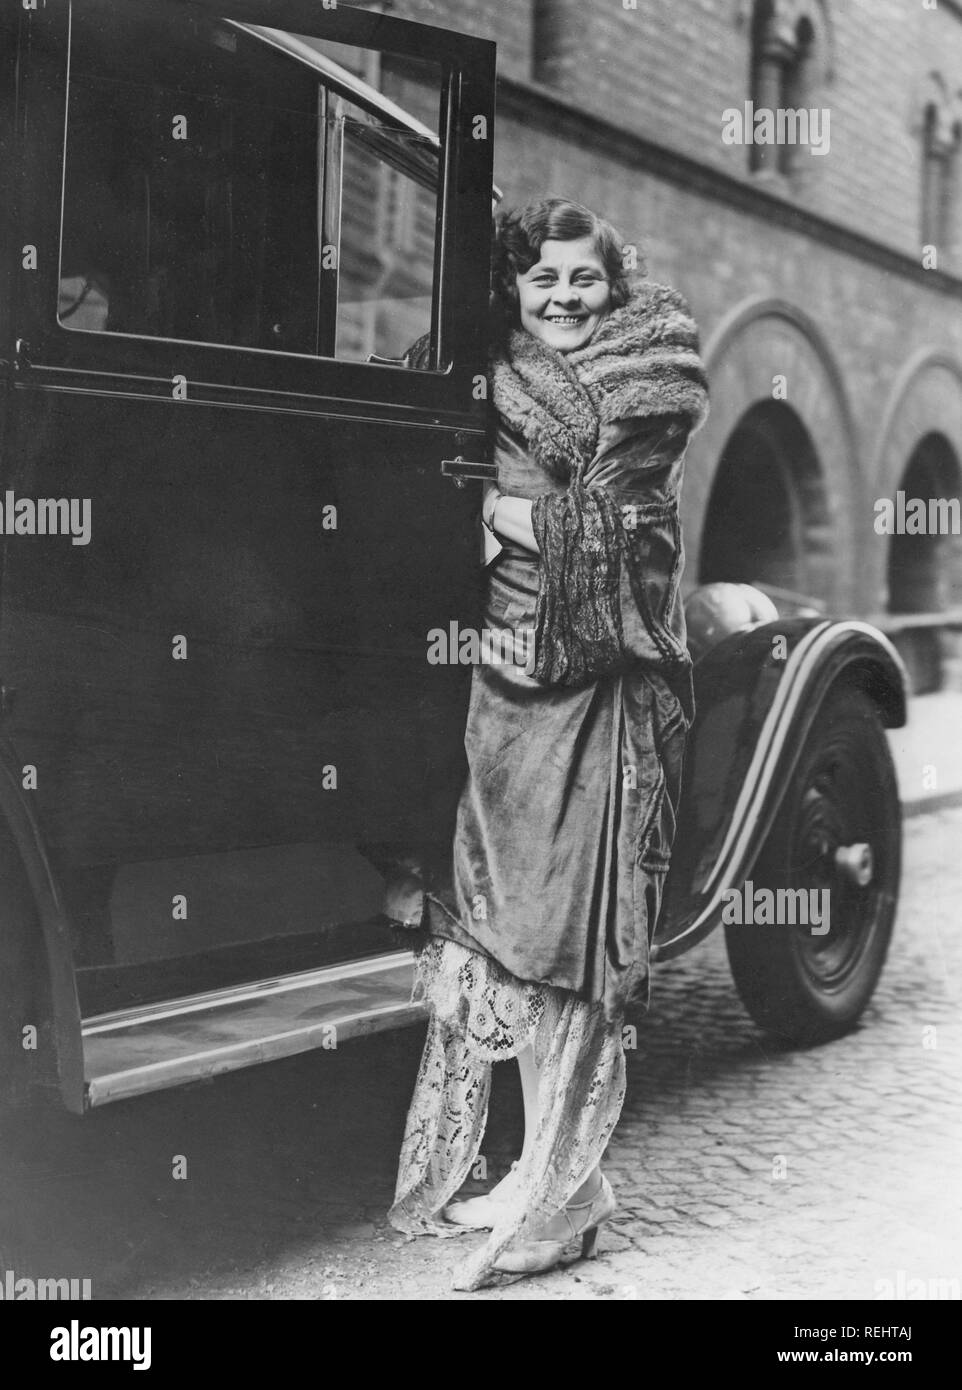 La mode féminine dans les années 1920. Une jeune femme en vêtements typique  des années 1920 debout à côté d'une voiture, de l'ouverture de la porte.  Elle est la chanteuse d'opéra suédoise